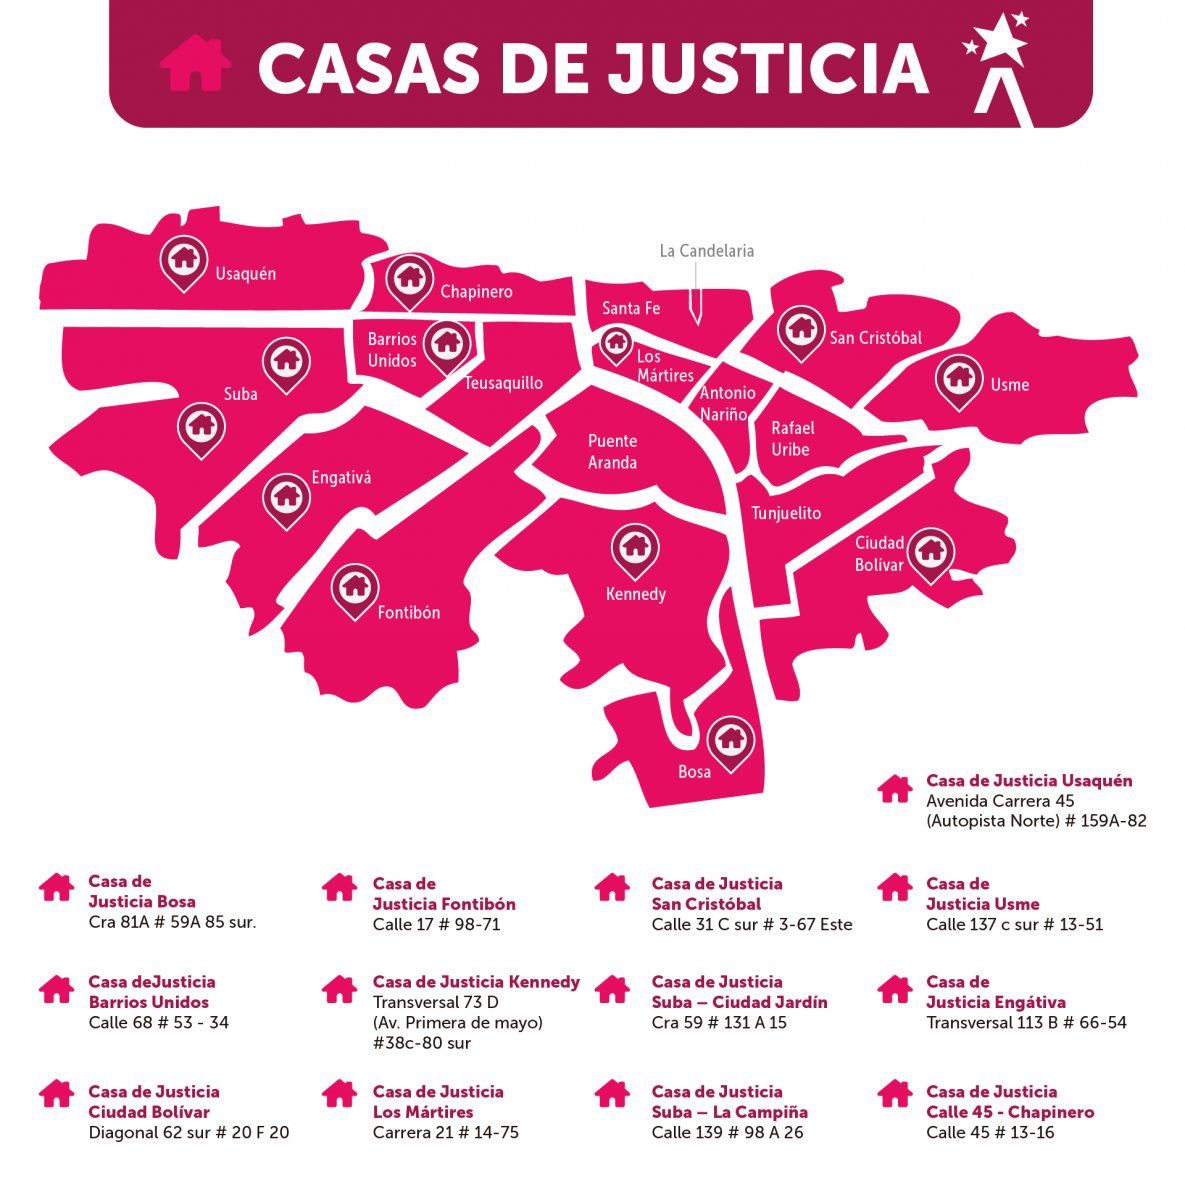 Casas de Justicia - PIEZA GRÄFICA: Prensa Secretaría de Seguridad